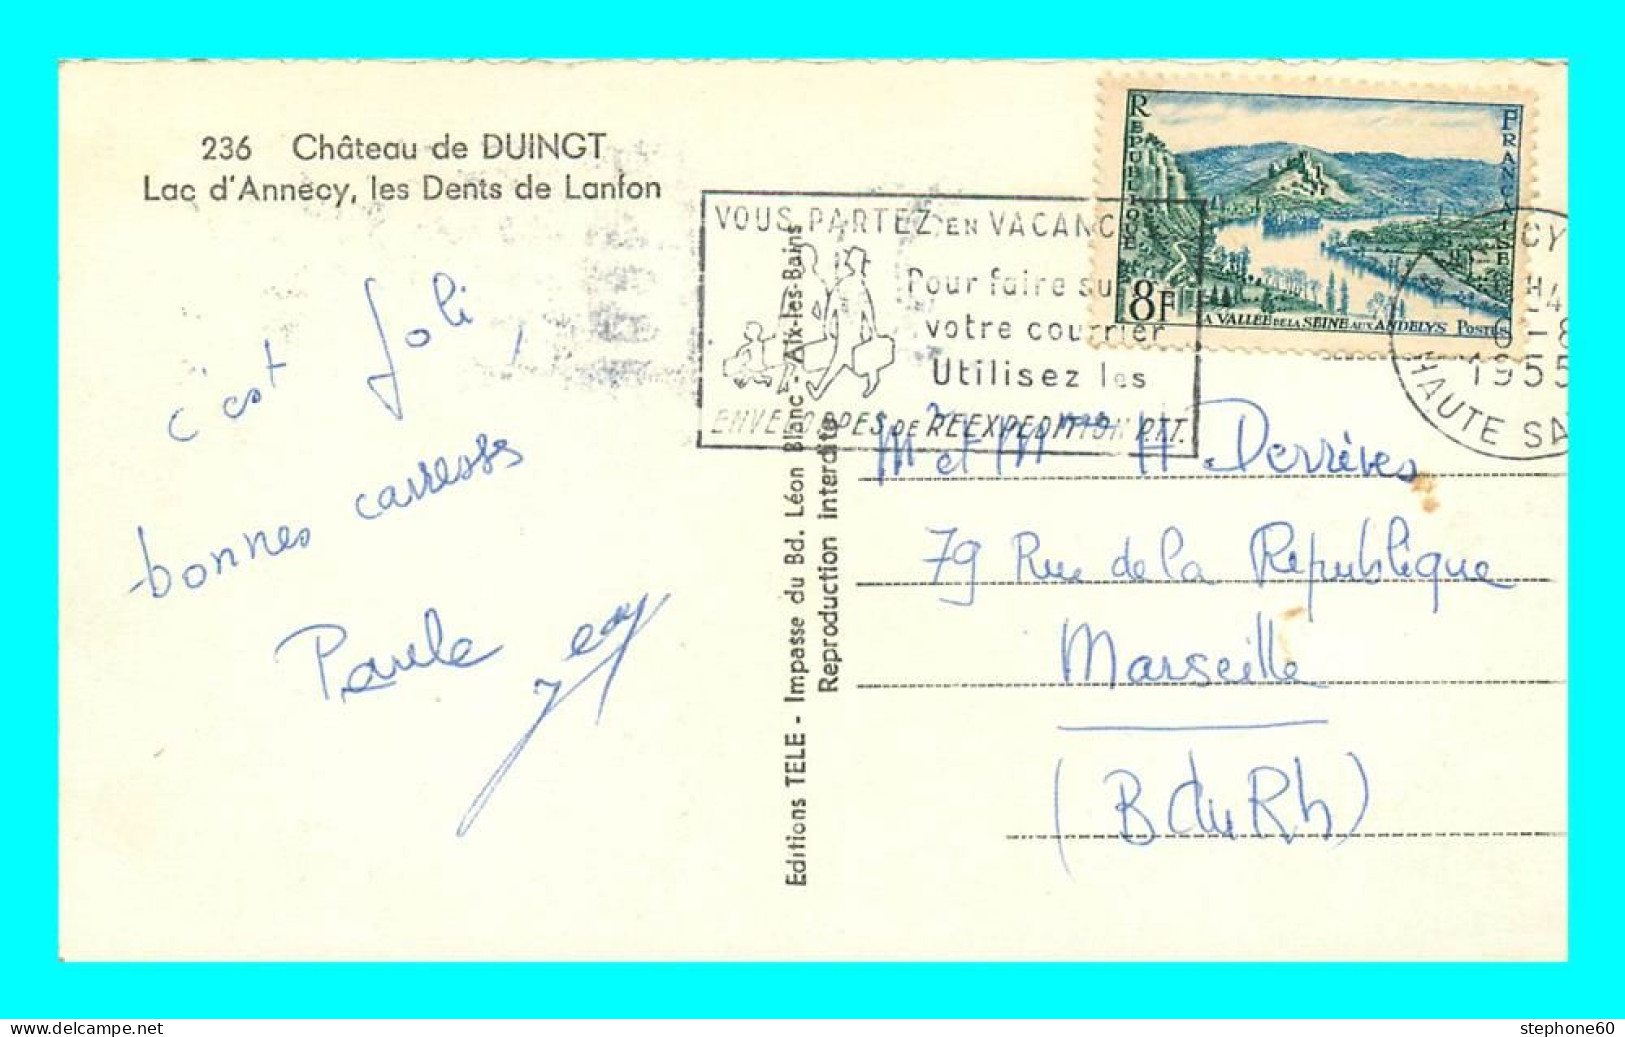 A843 / 317 74 - DUINGT Chateau Lac D'Annecy Les Dents De Landon - Duingt